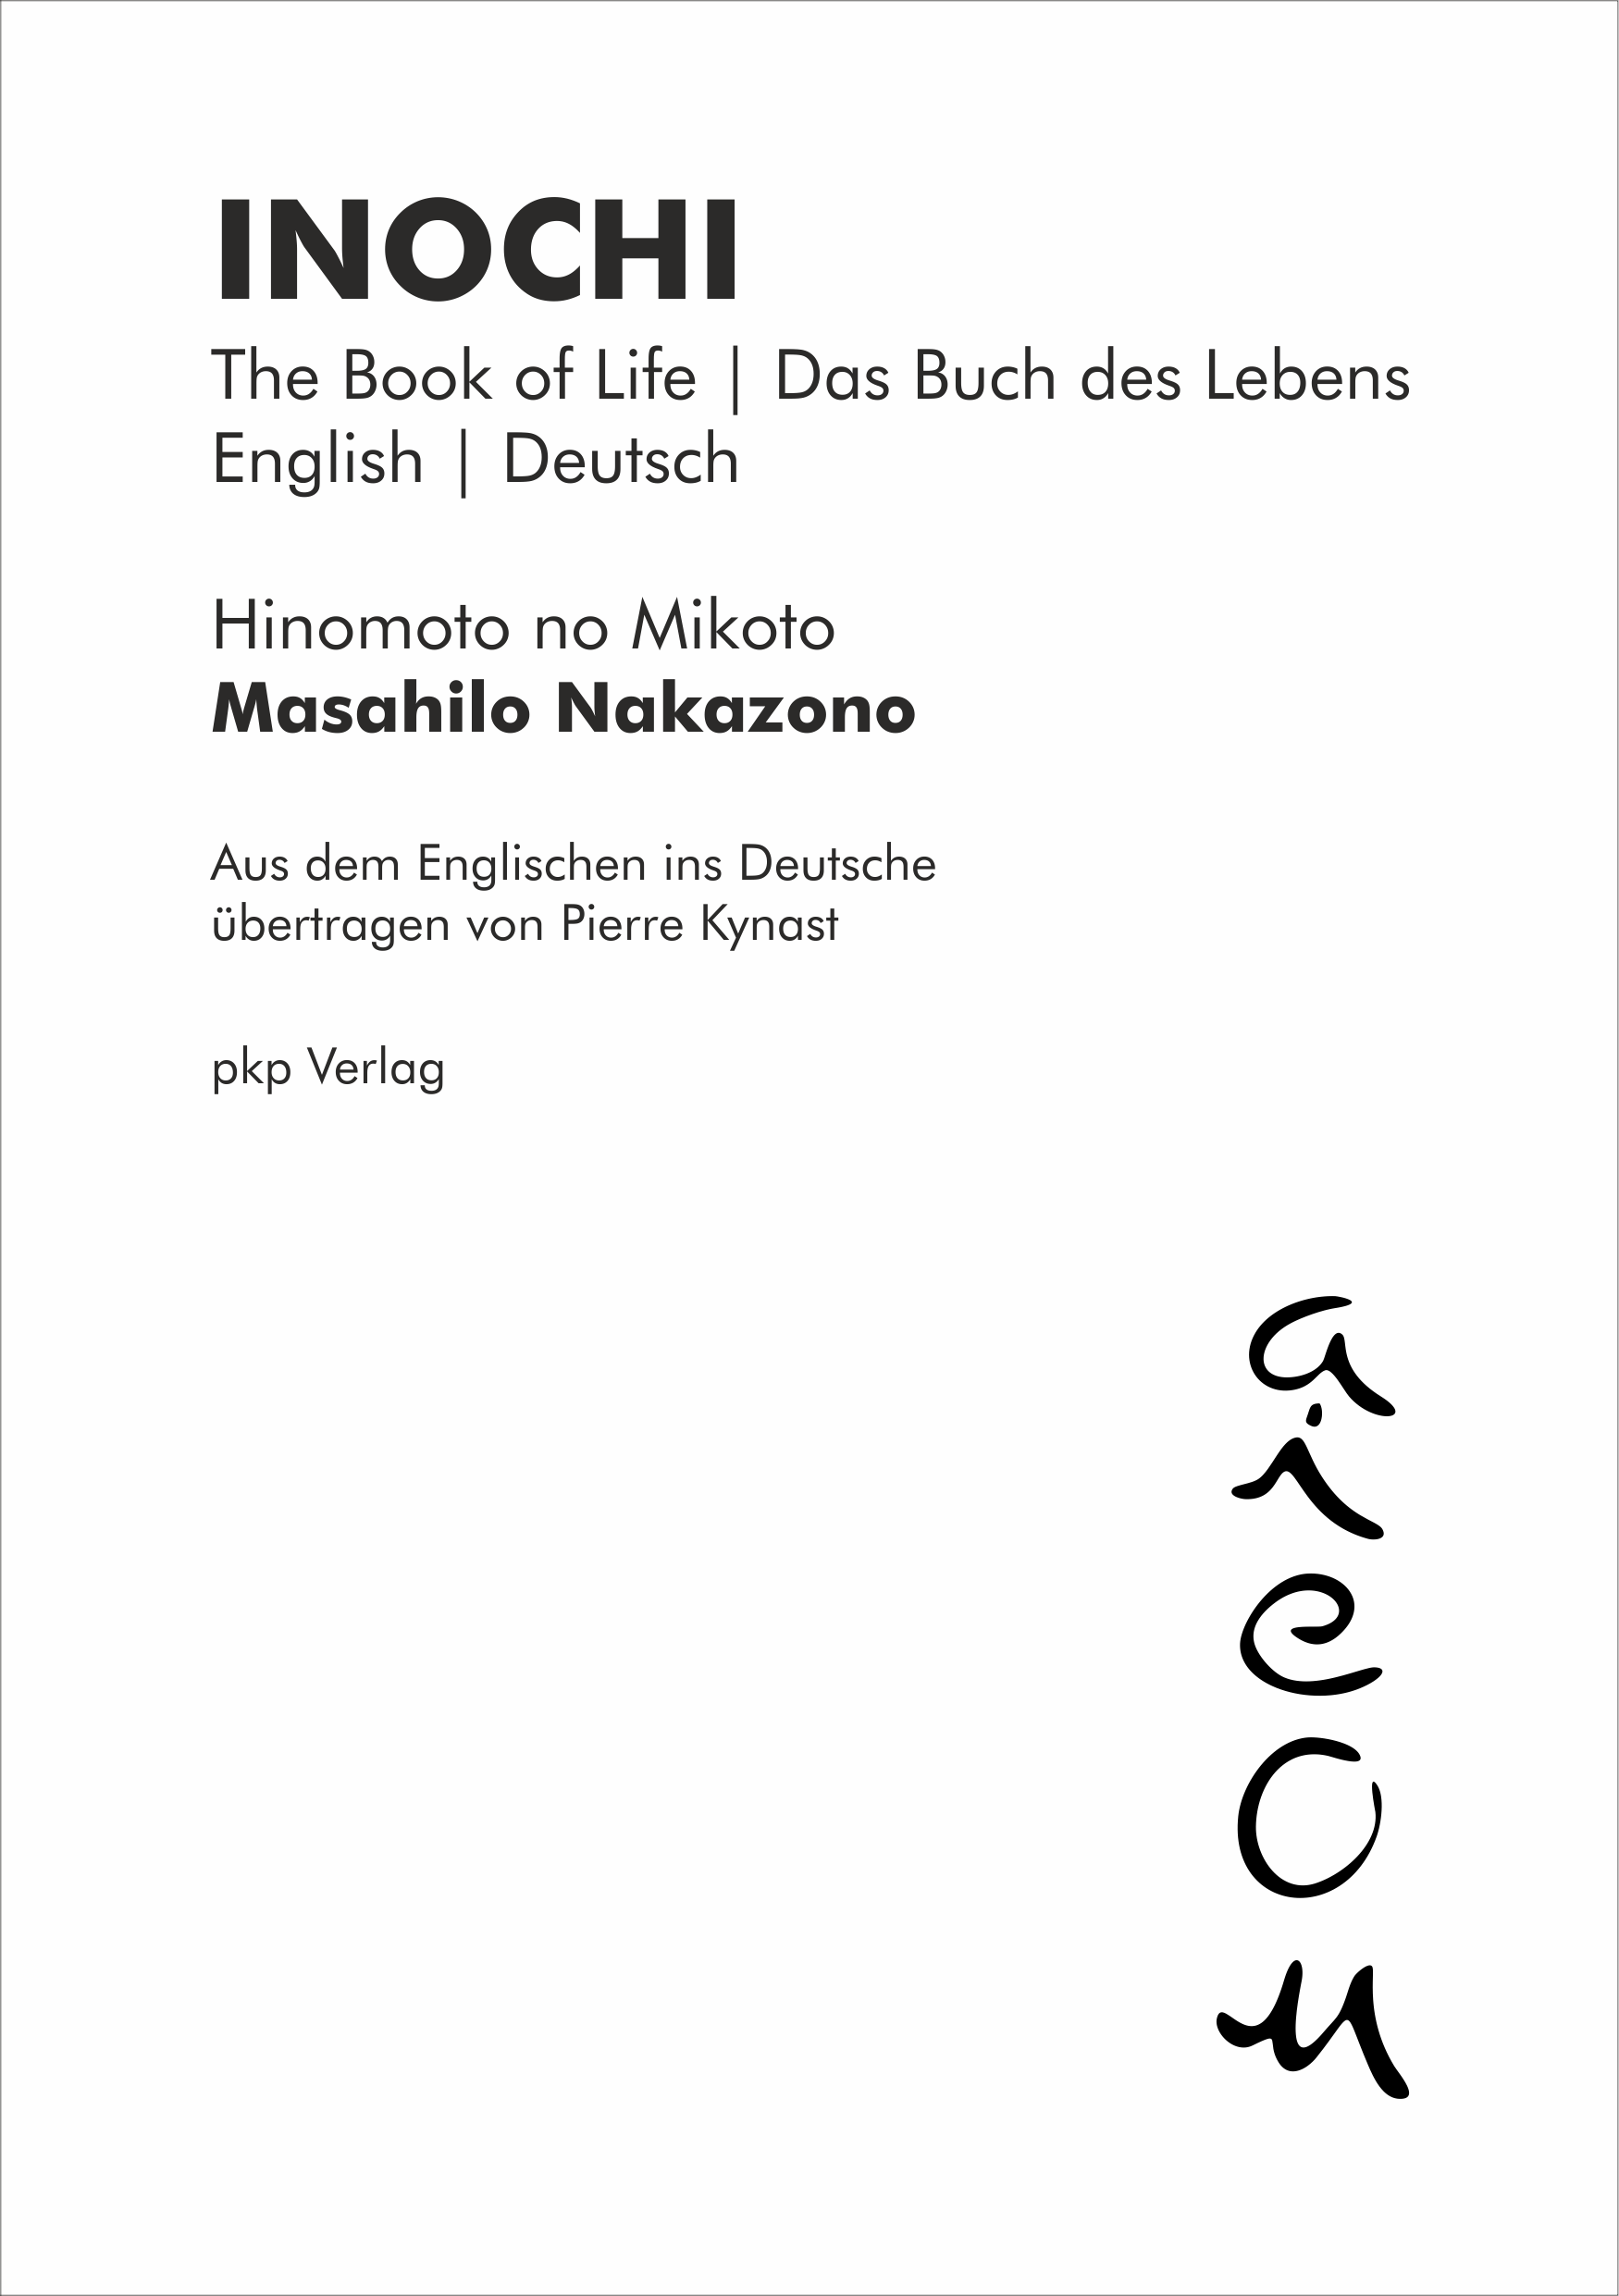 INOCHI - The Book of Life | Das Buch des Lebens (Masahilo Nakazono - Eng | Deu - pkp Verlag